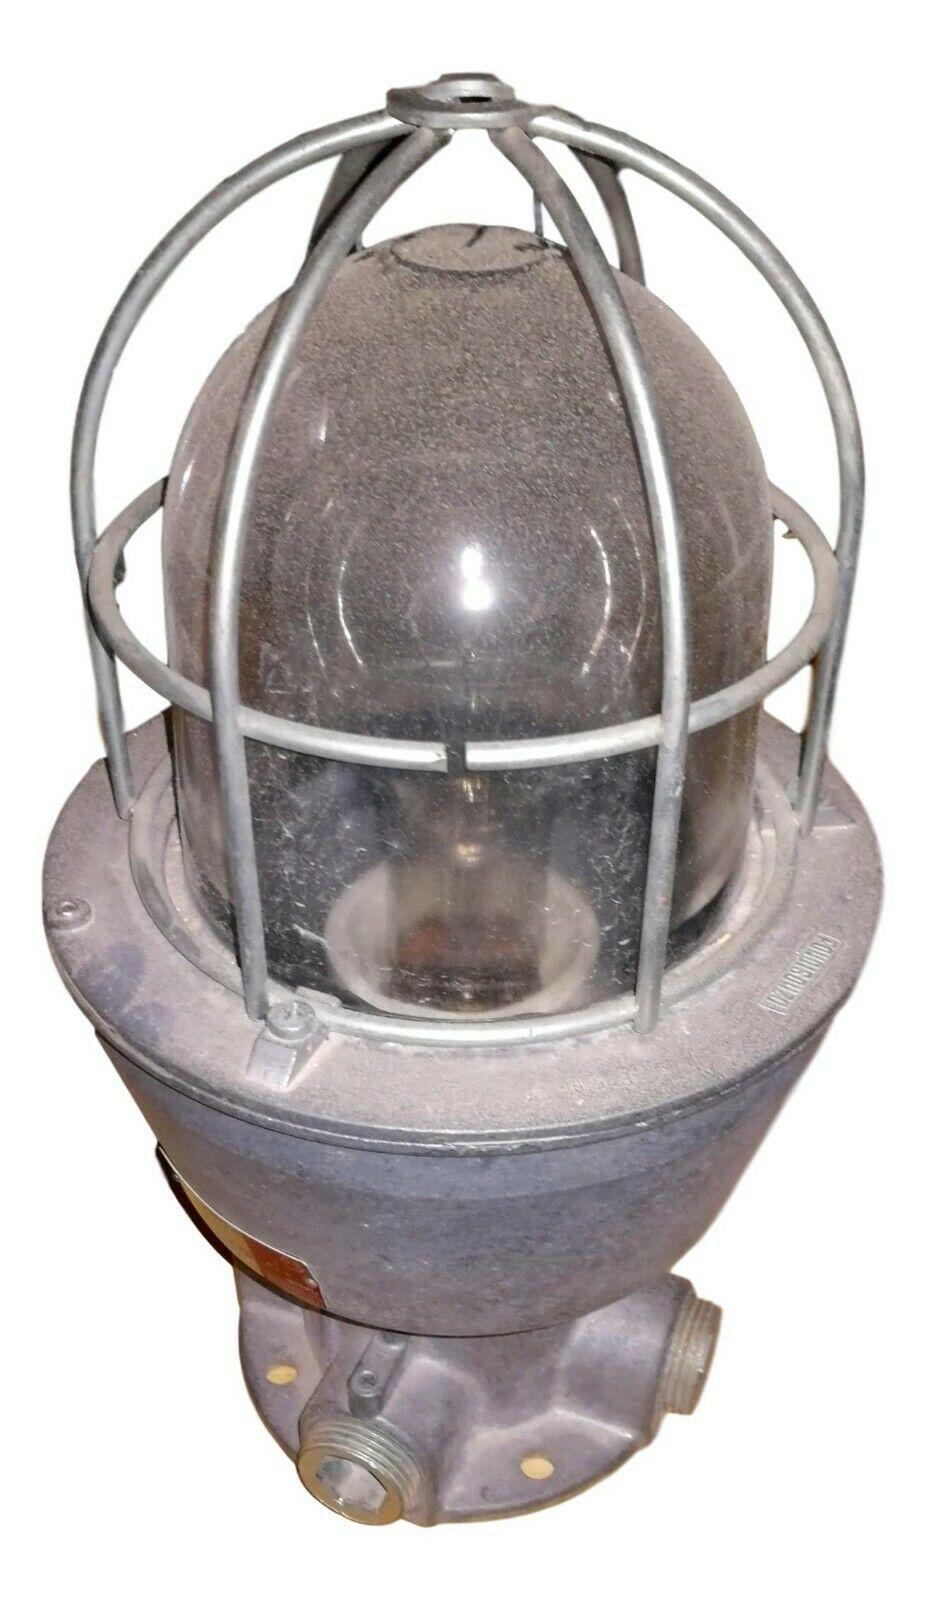 Lampe industrielle produite par Fondisonzo Italie, originale des années 70

Corps en aluminium moulé sous pression, à très haute résistance à la chaleur

A l'intérieur, il y a toujours une grande lampe originale de l'époque

Taille : Hauteur